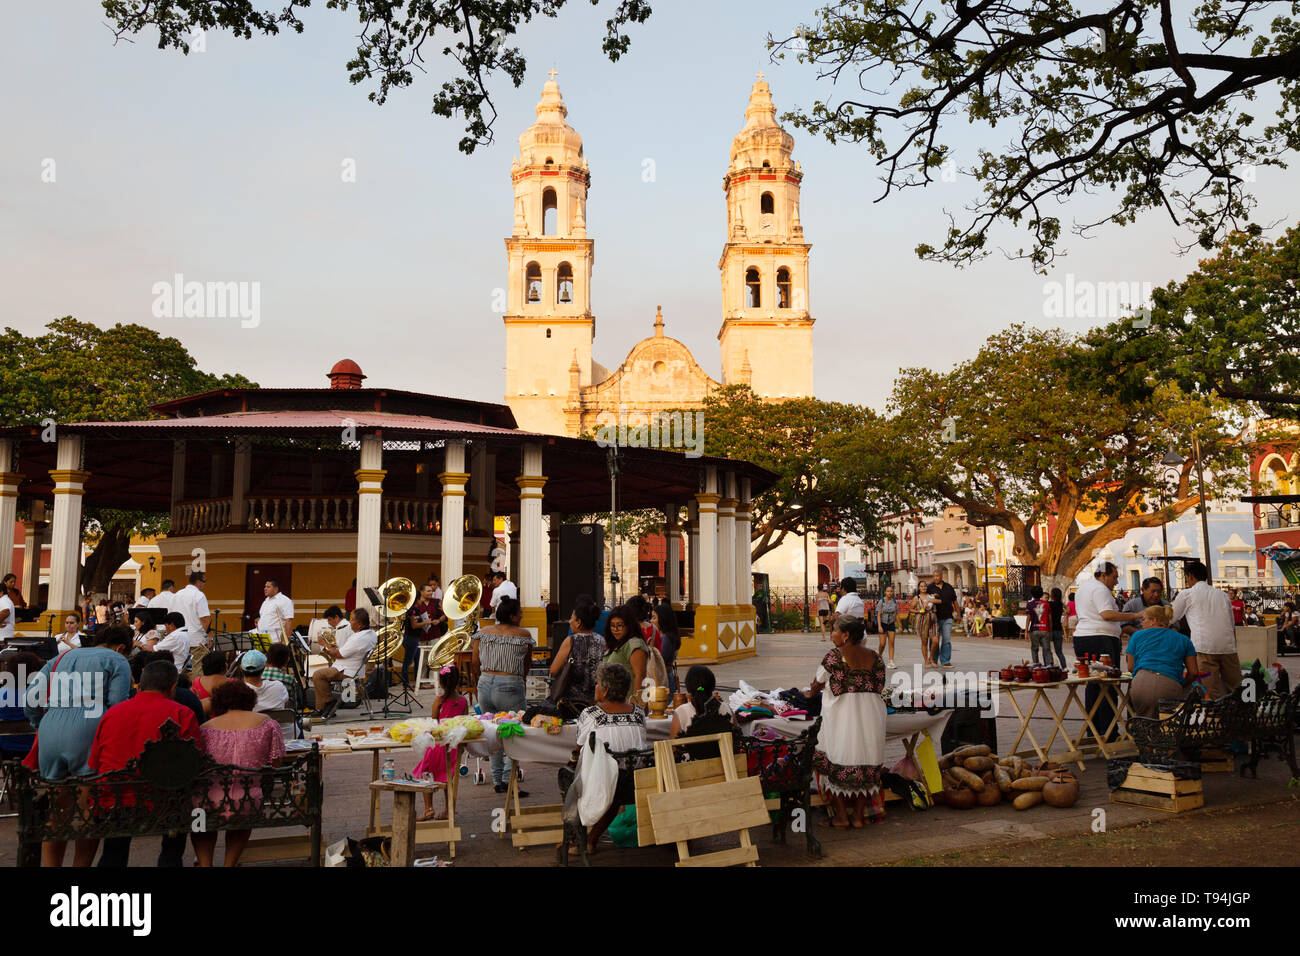 Campeche Mexique - Cathédrale et les gens sur la place centrale, de la vieille ville de Campeche, UNESCO World Heritage site, Yucatan Mexique Amérique Latine Banque D'Images